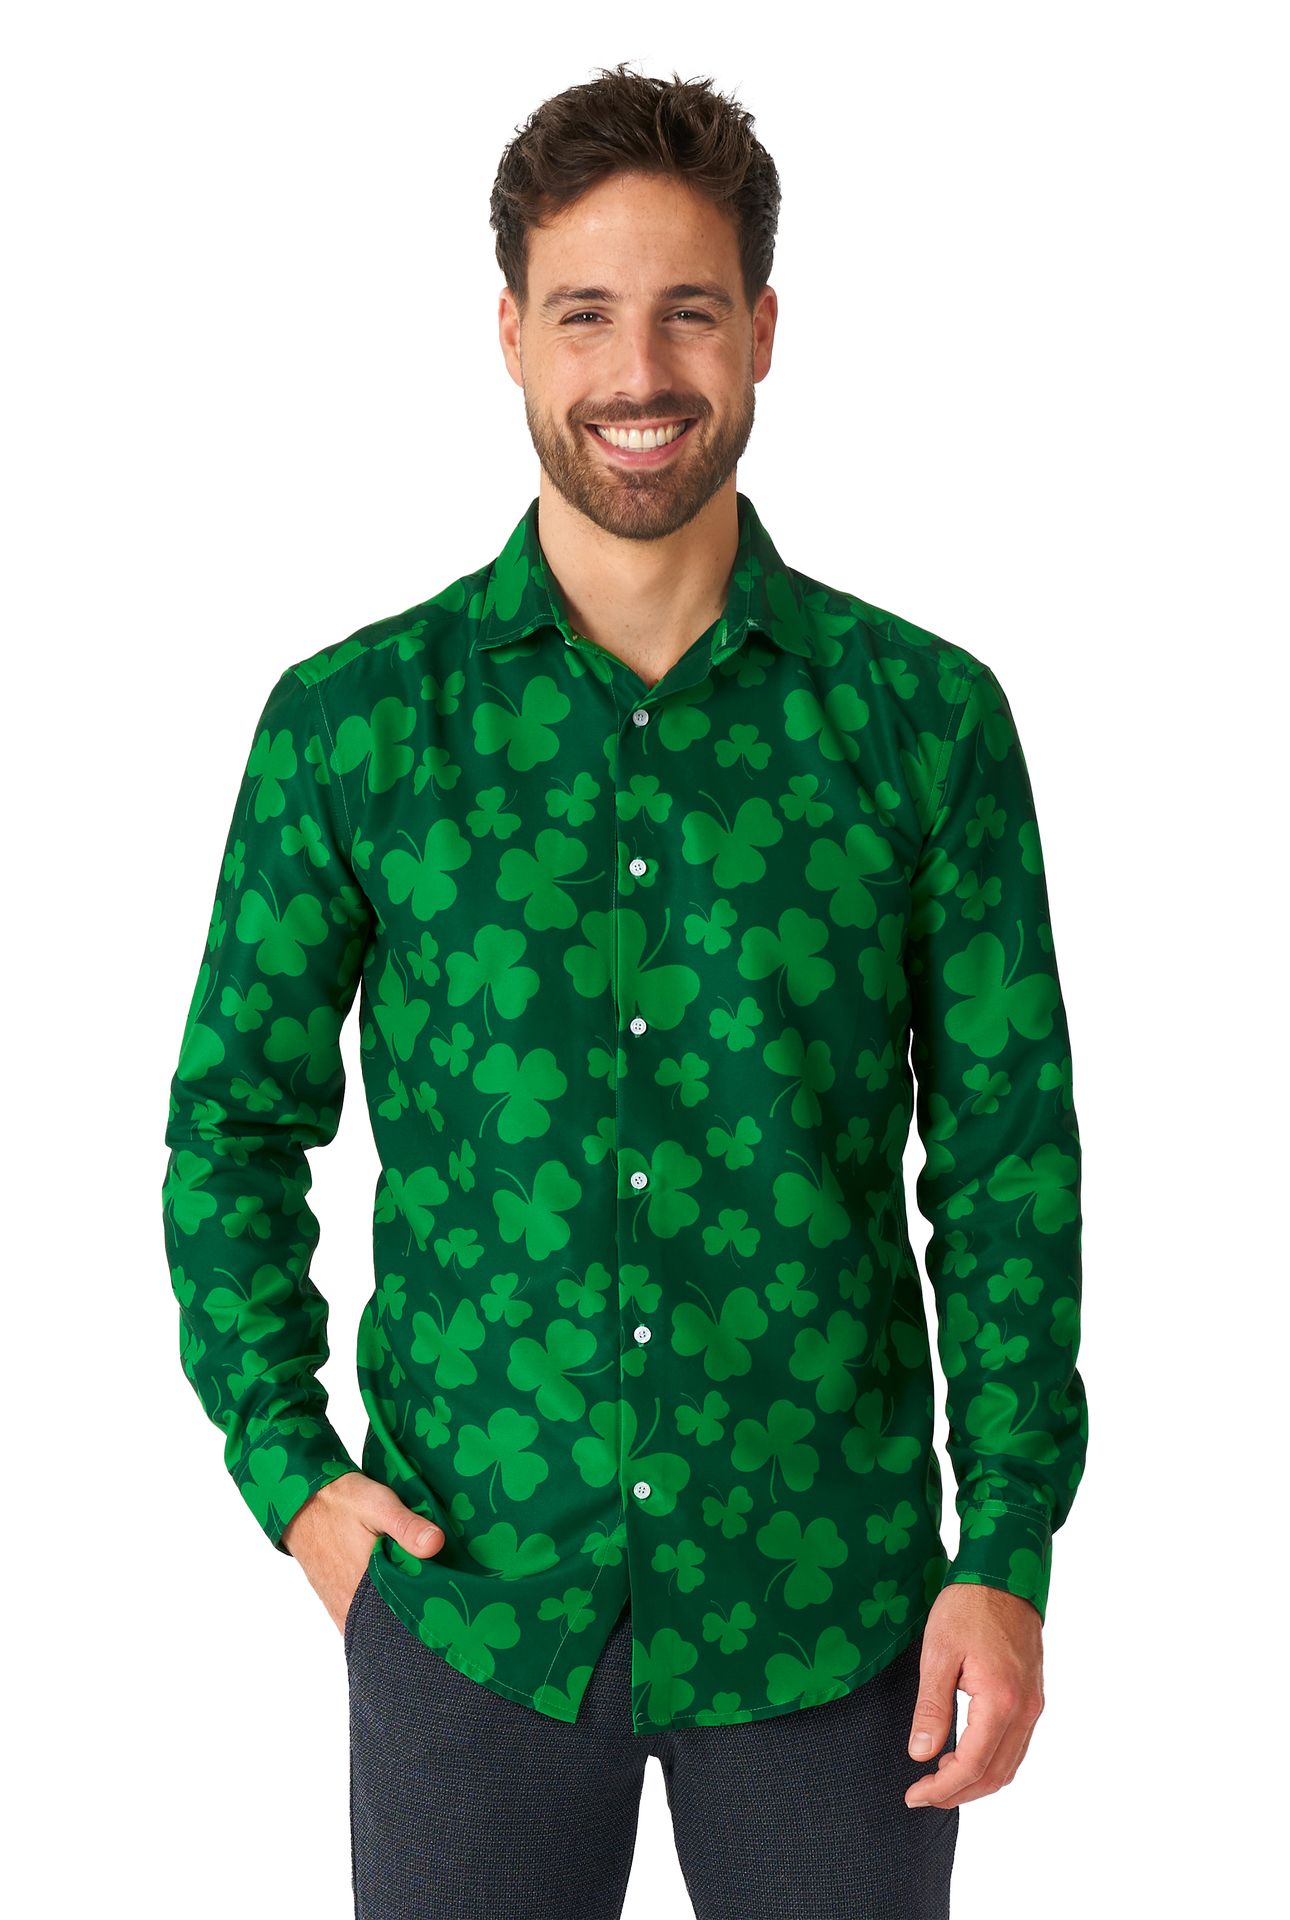 St. Pats groene blouse heren